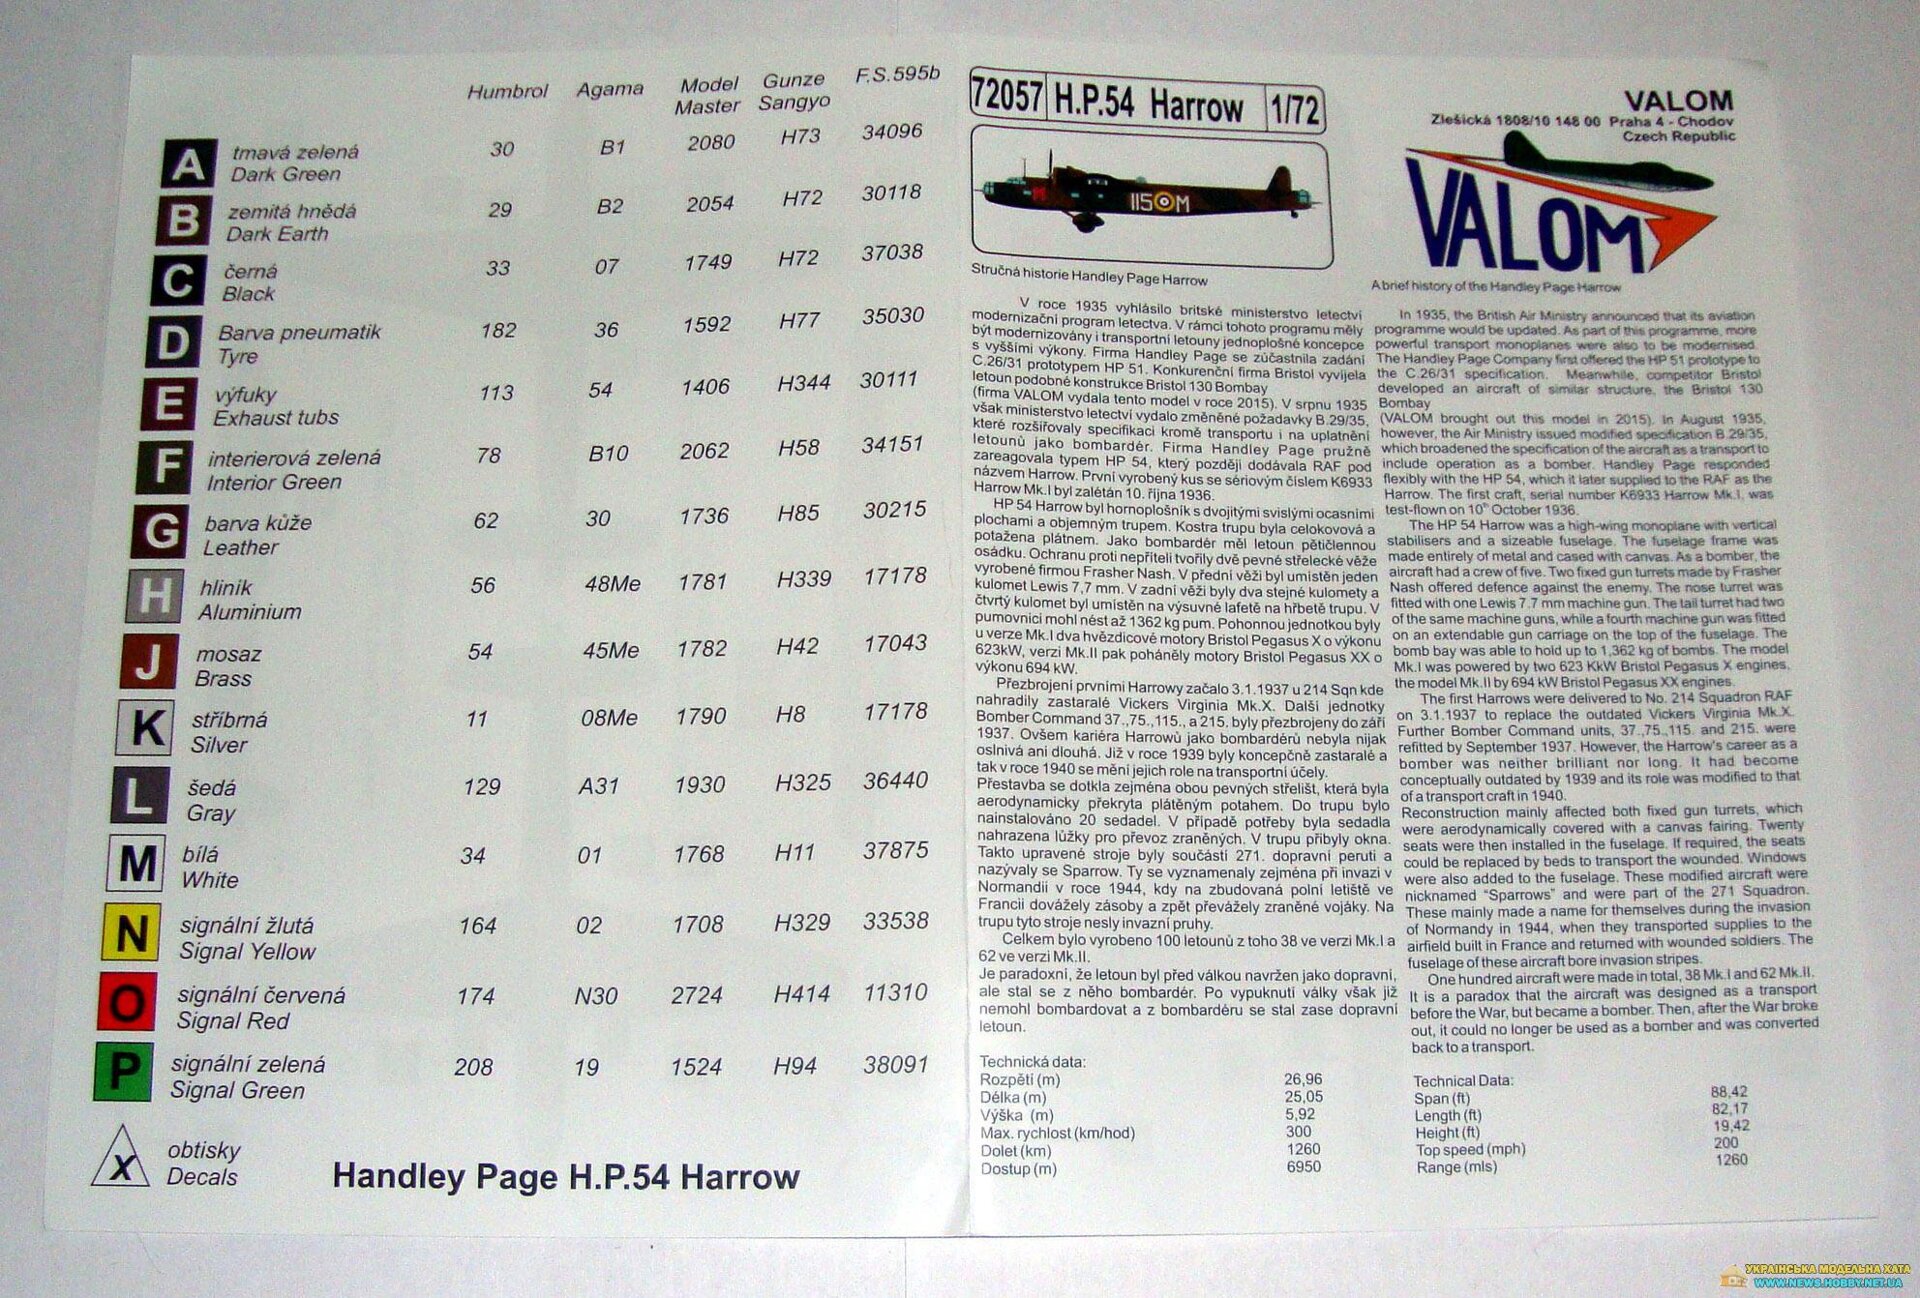 Handley Page Harrow Mk.II Valom 72057 - фото pic_360133a195b02f4f844c44eb4a732dc9_1920x9000_1.jpg